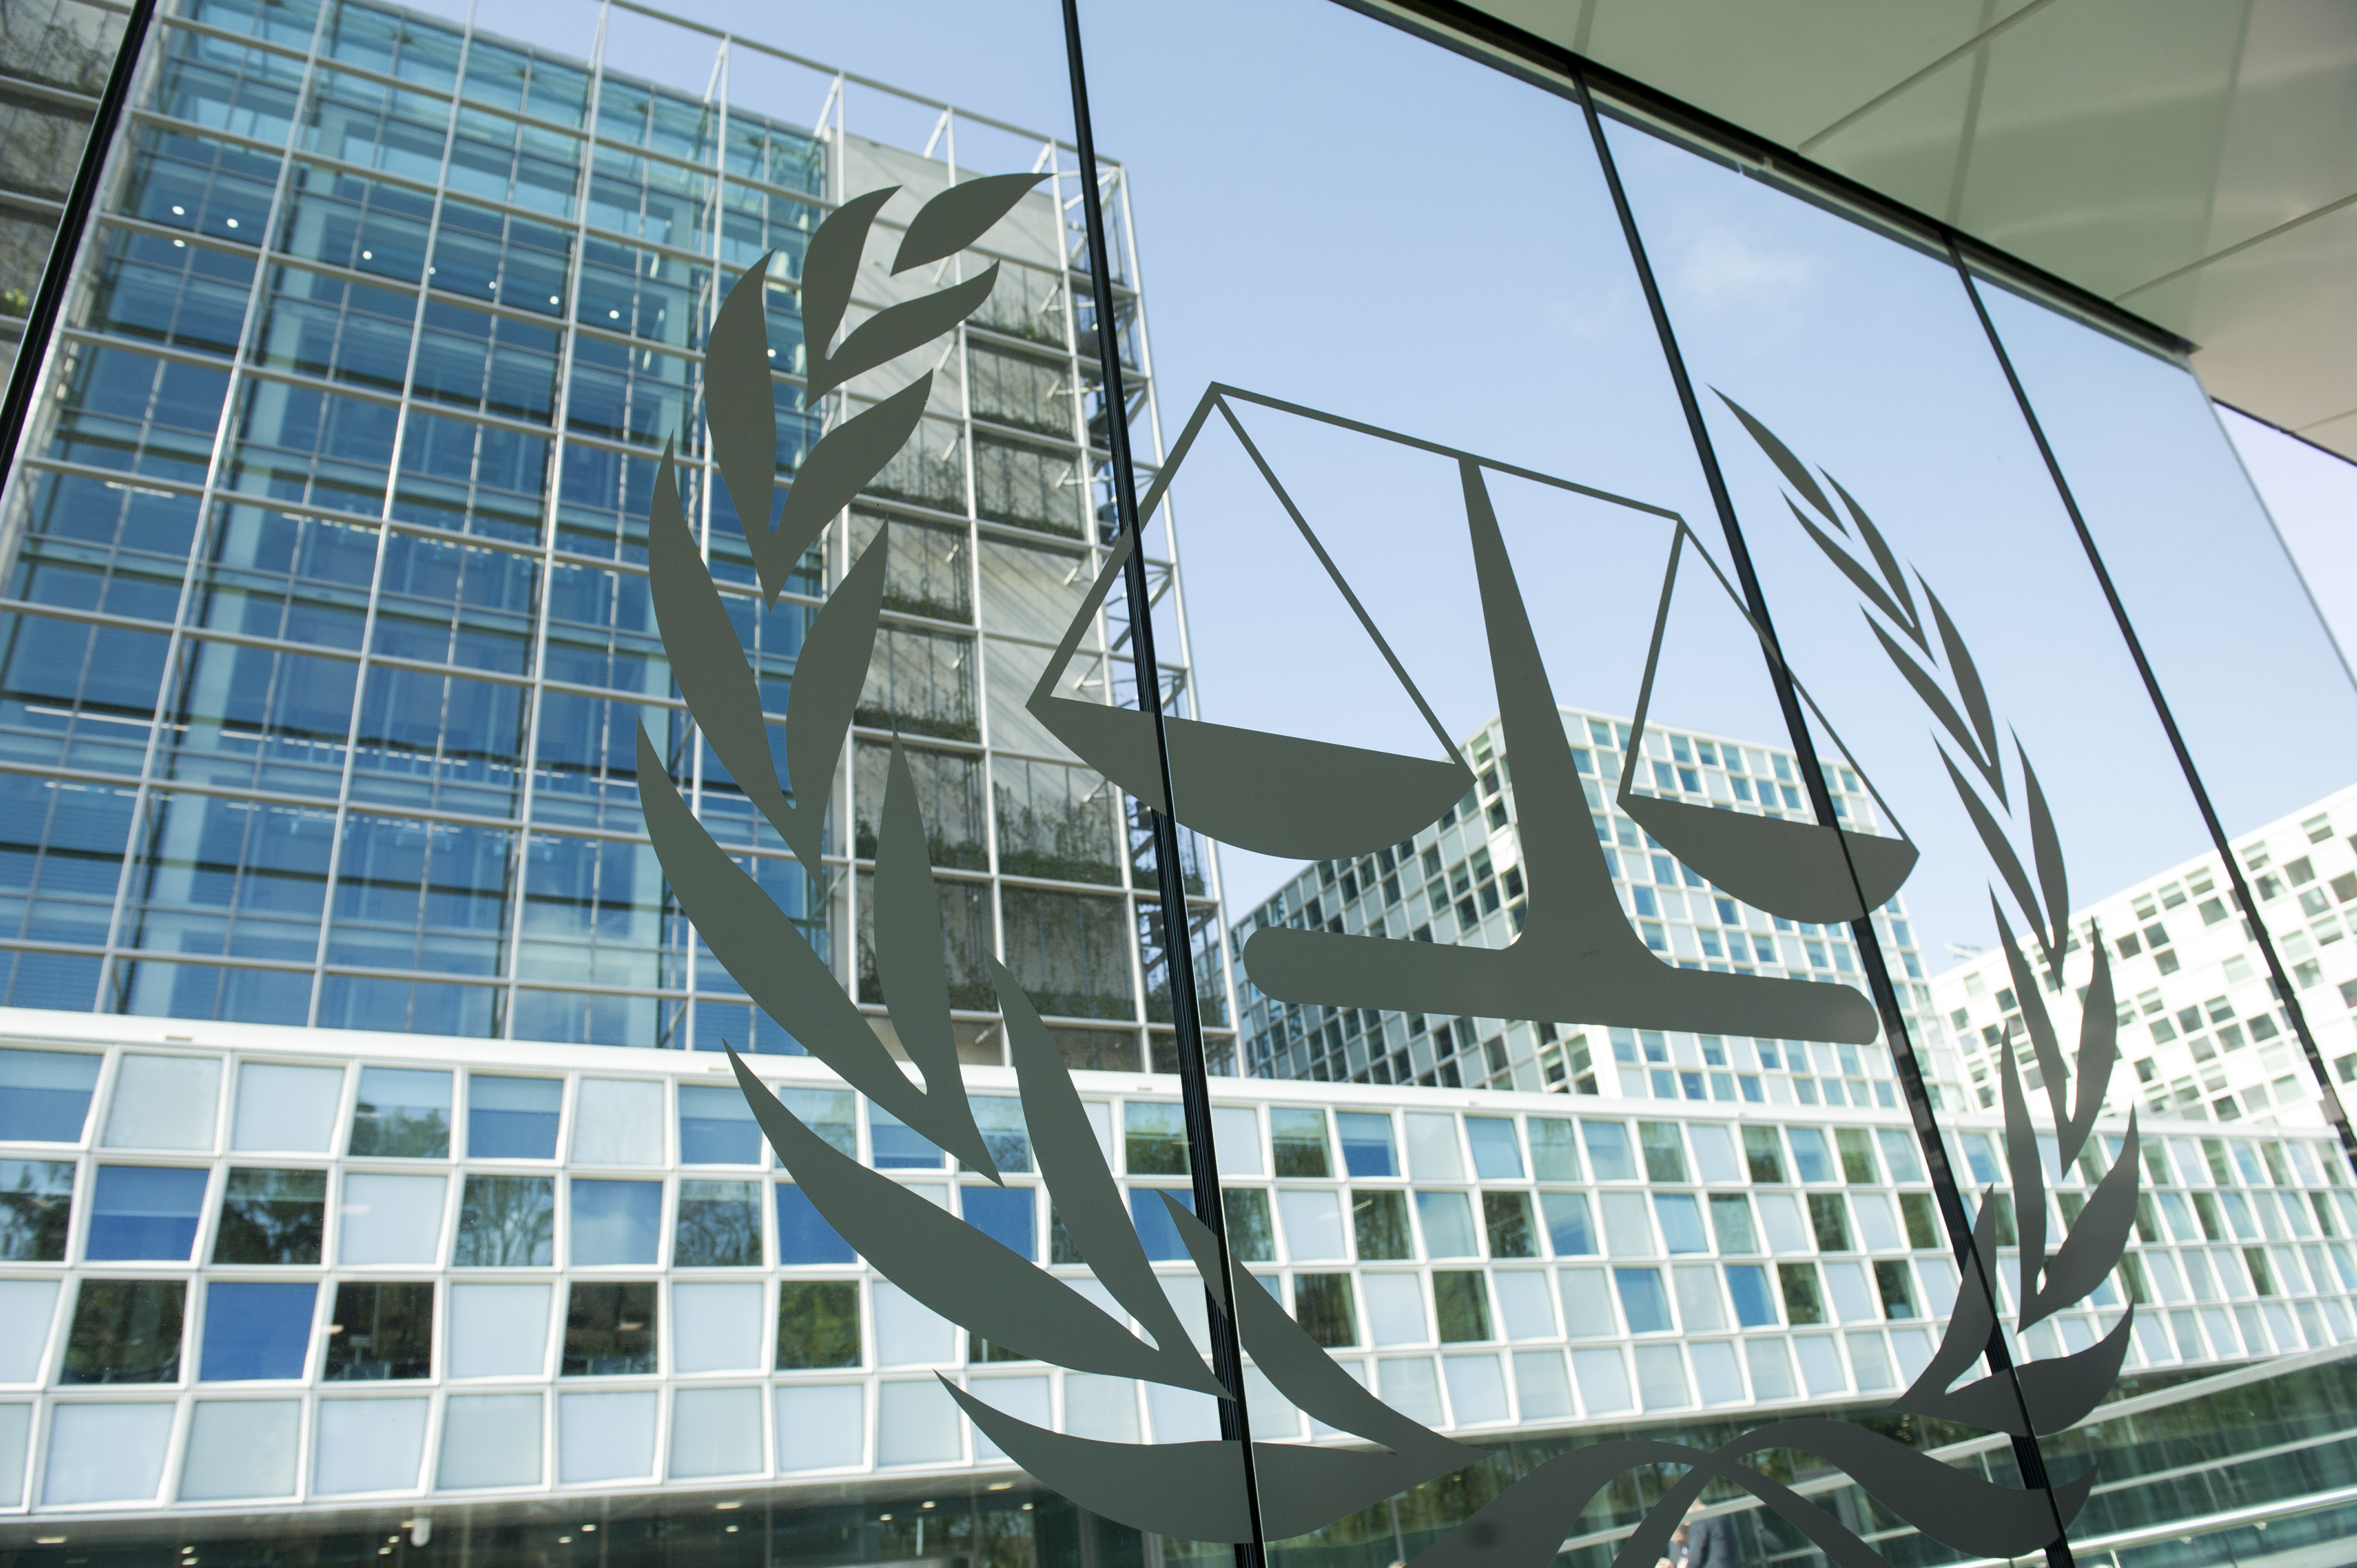 Суда гааги. Международный Уголовный суд в Гааге. Международный Уголовный трибунал (Гаага). Международный Уголовный суд Гаага Нидерланды. Международный Уголовный суд ООН здание Гаага.